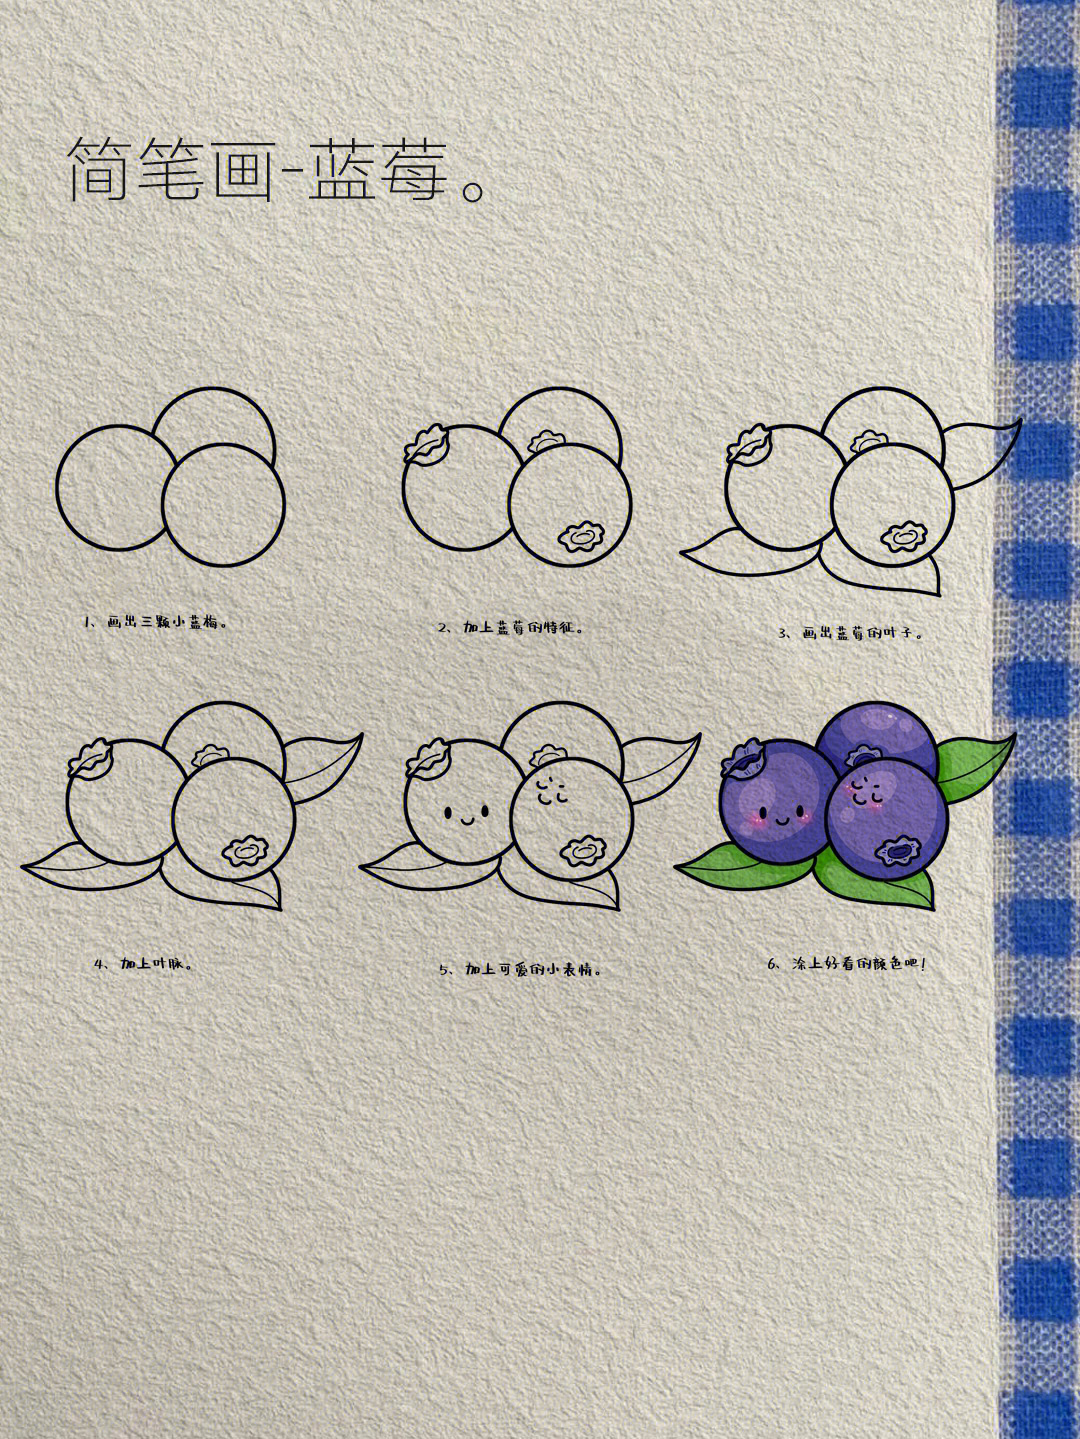 今日简笔画3蓝莓